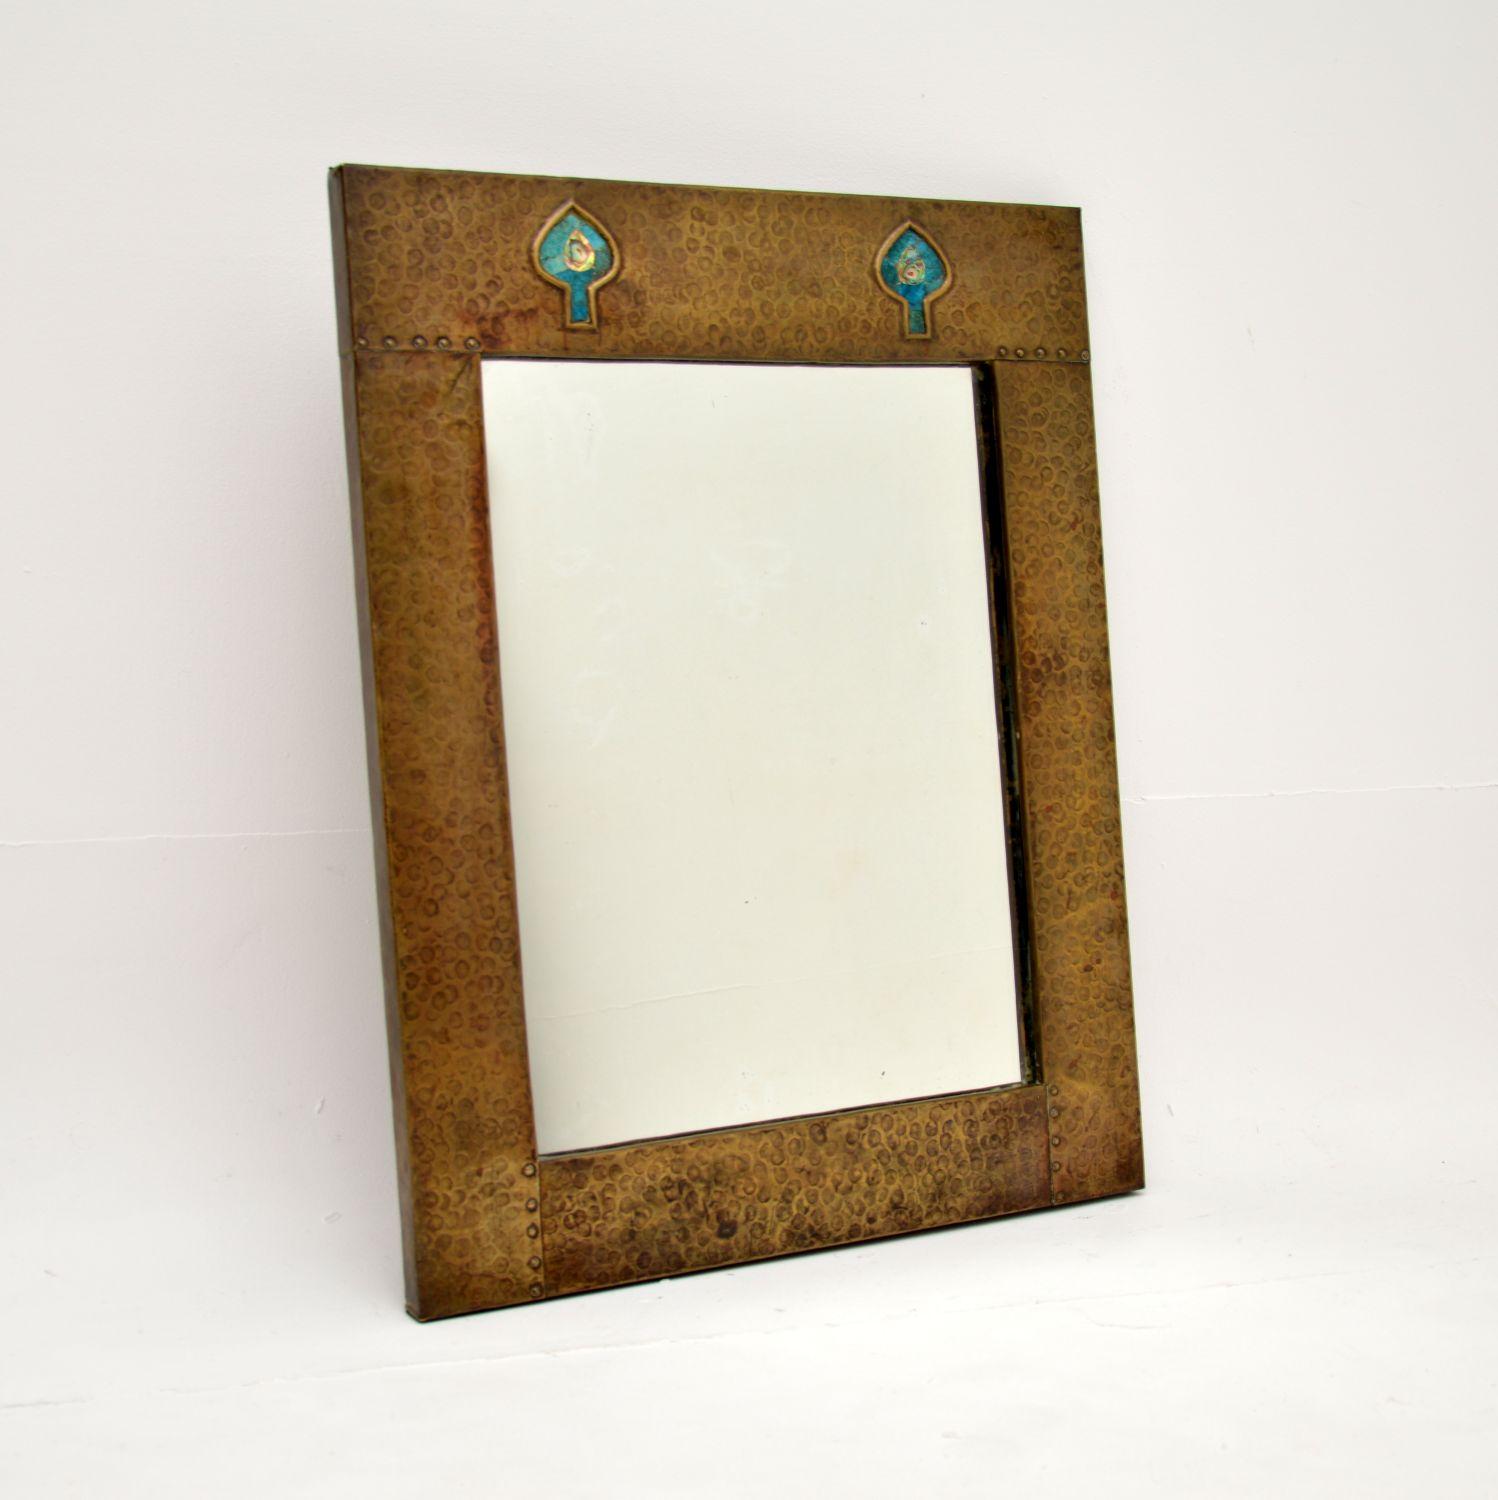 Superbe miroir ancien en laiton battu de style Arte Antiques. Il a probablement été fabriqué pour Liberty of London et date de la période 1890-1900.

Le cadre en laiton battu présente deux motifs en forme de bêche insérés dans la partie supérieure,